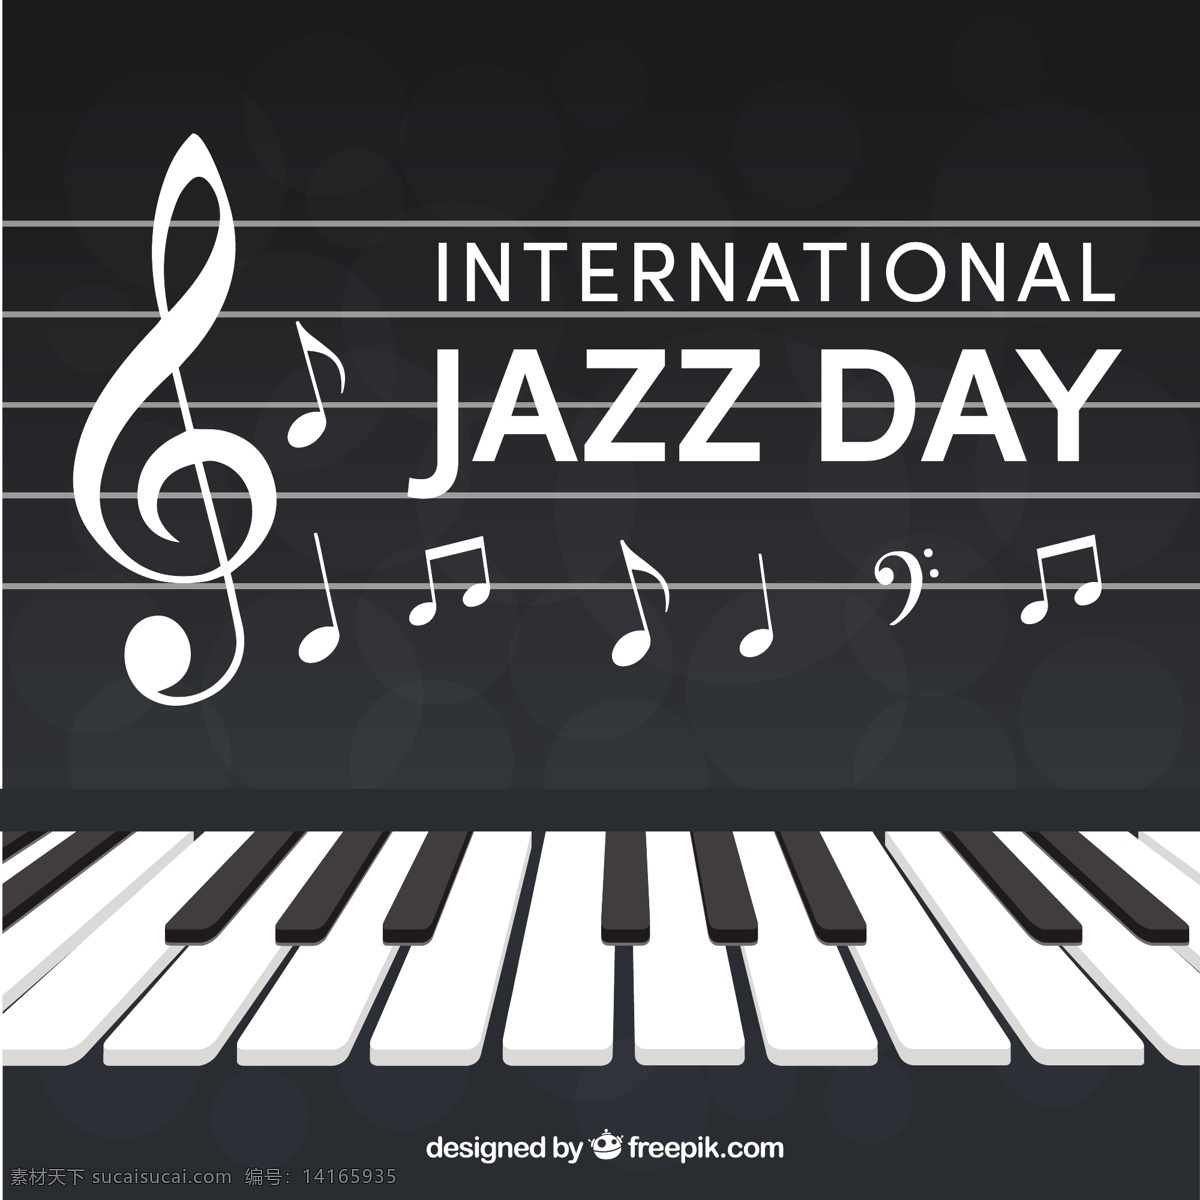 钢琴 背景 音符 音乐 庆祝 事件 节日 声音 音乐会 音乐背景 笔记 文化 爵士乐 音乐节 乐器 国际 白天 四月